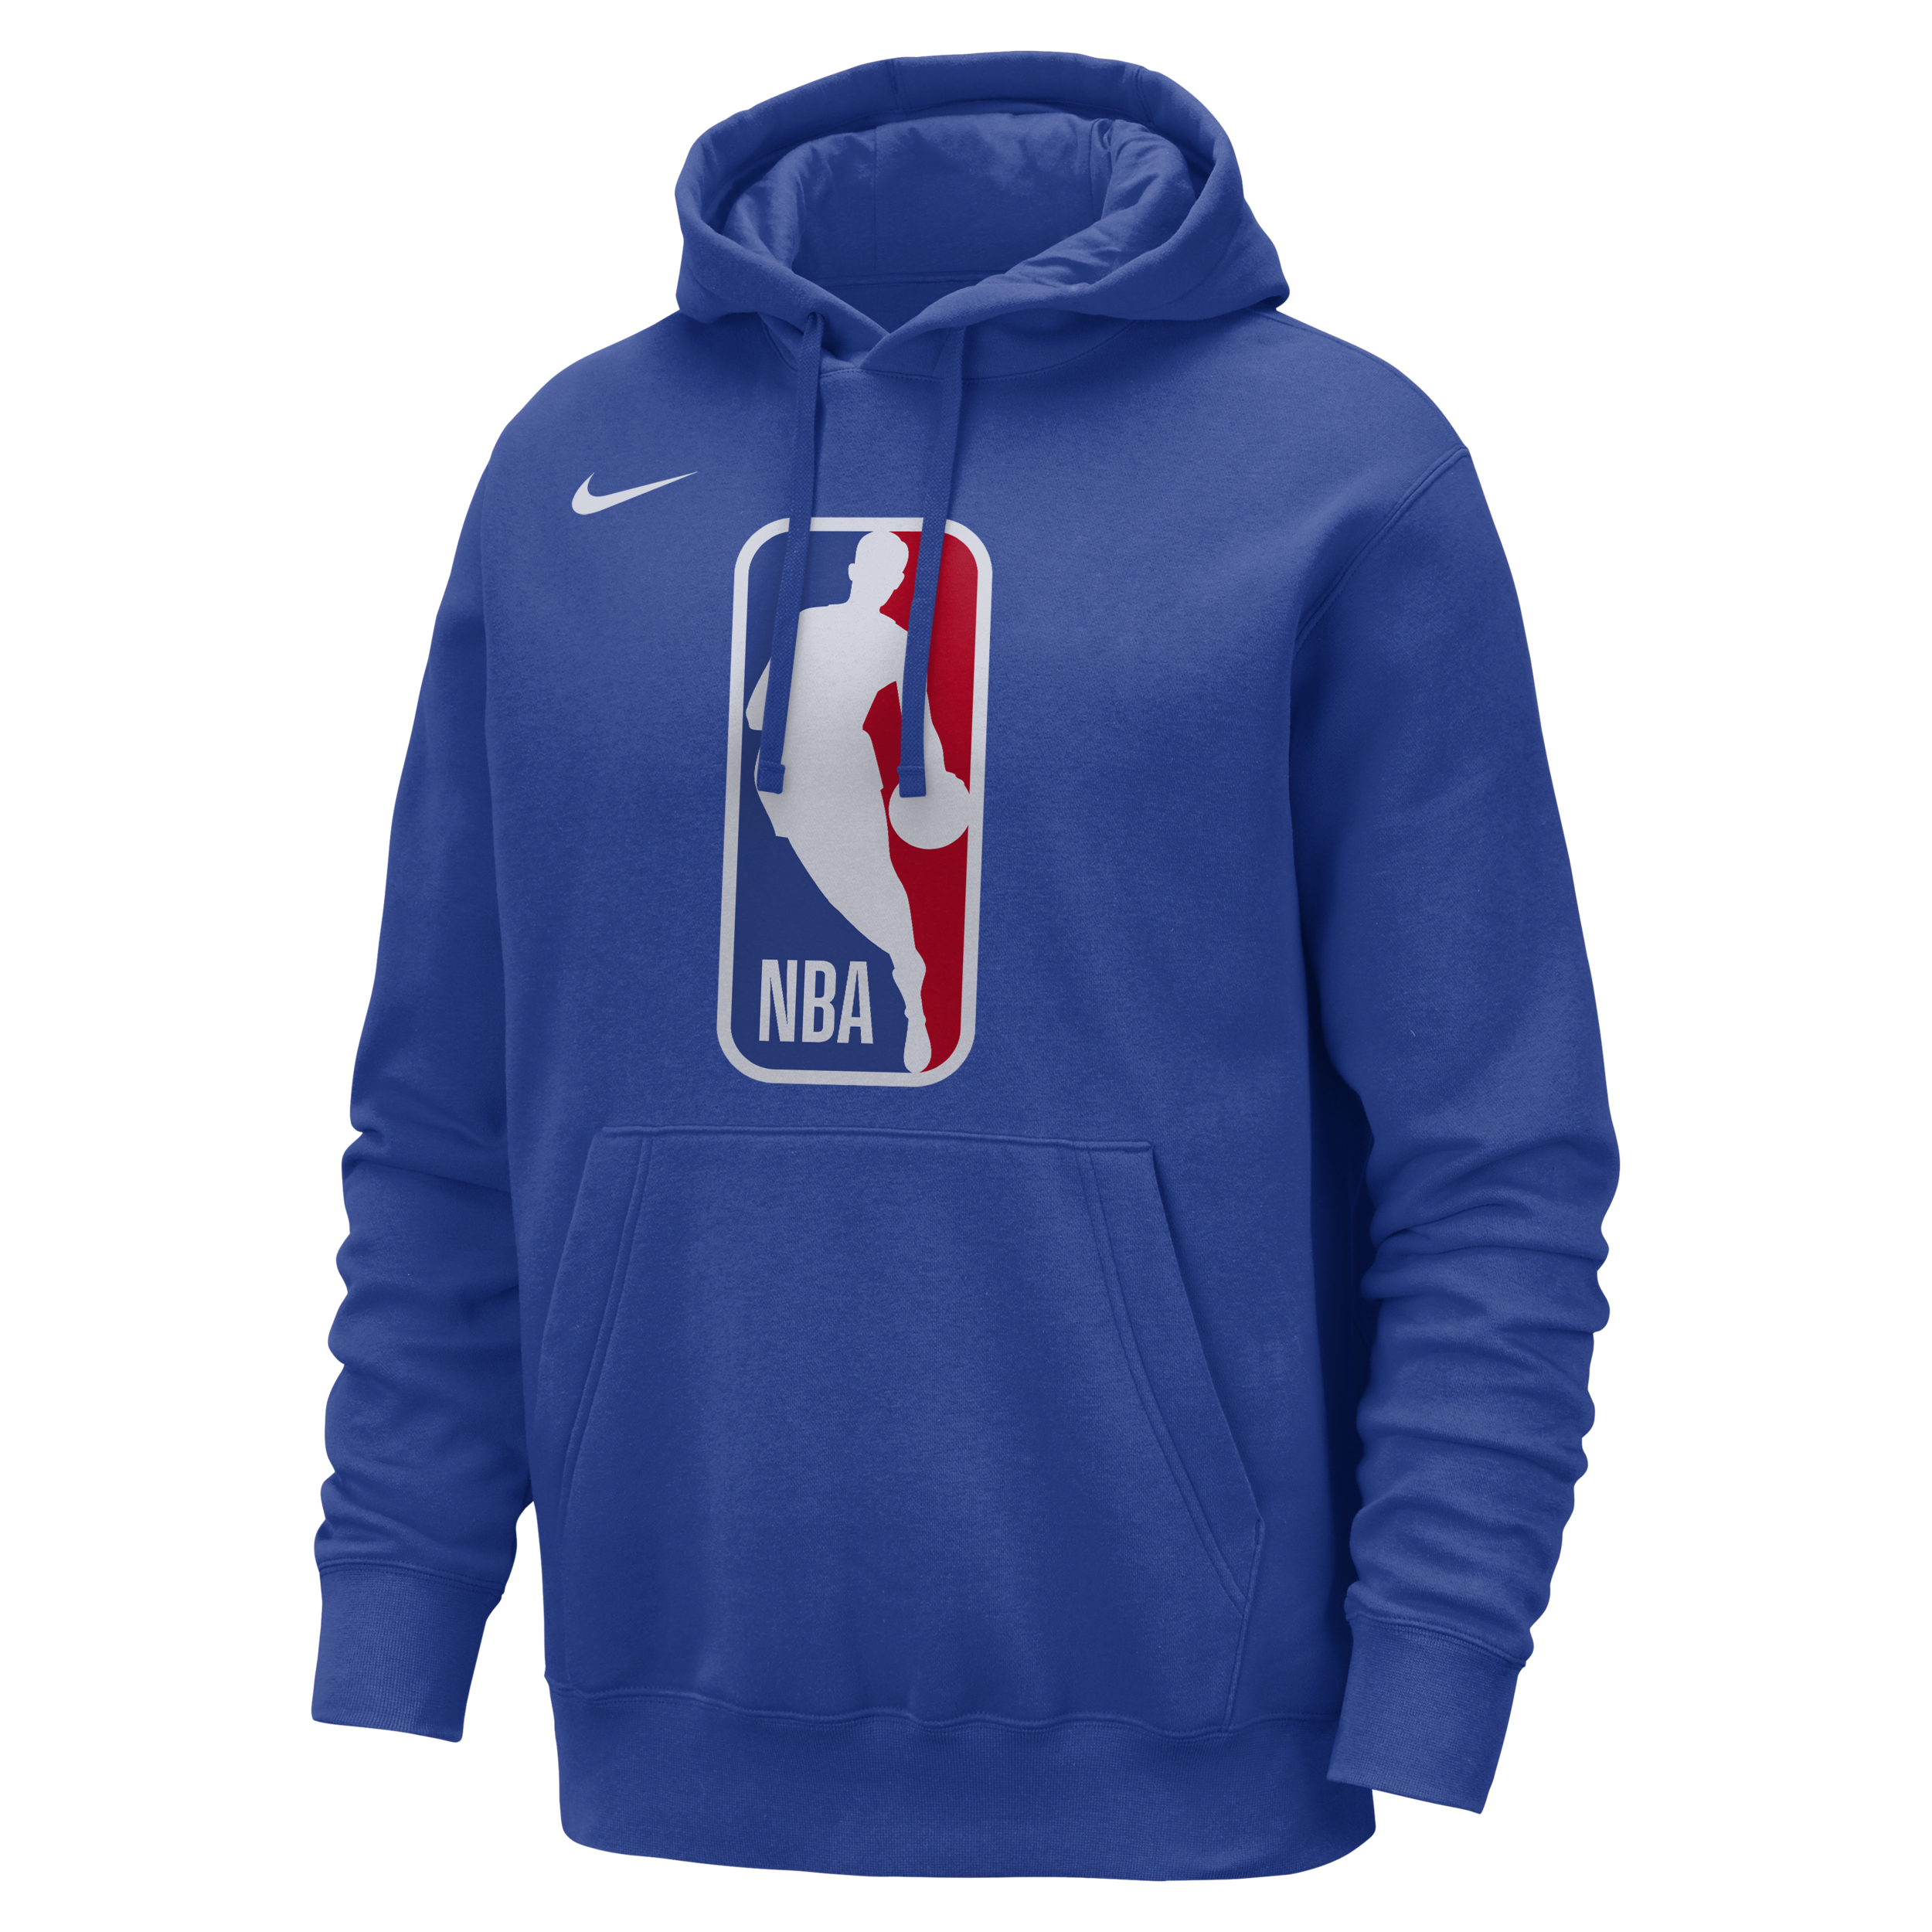 Team 31 Club Sudadera con capucha Nike de la NBA - Hombre - Azul